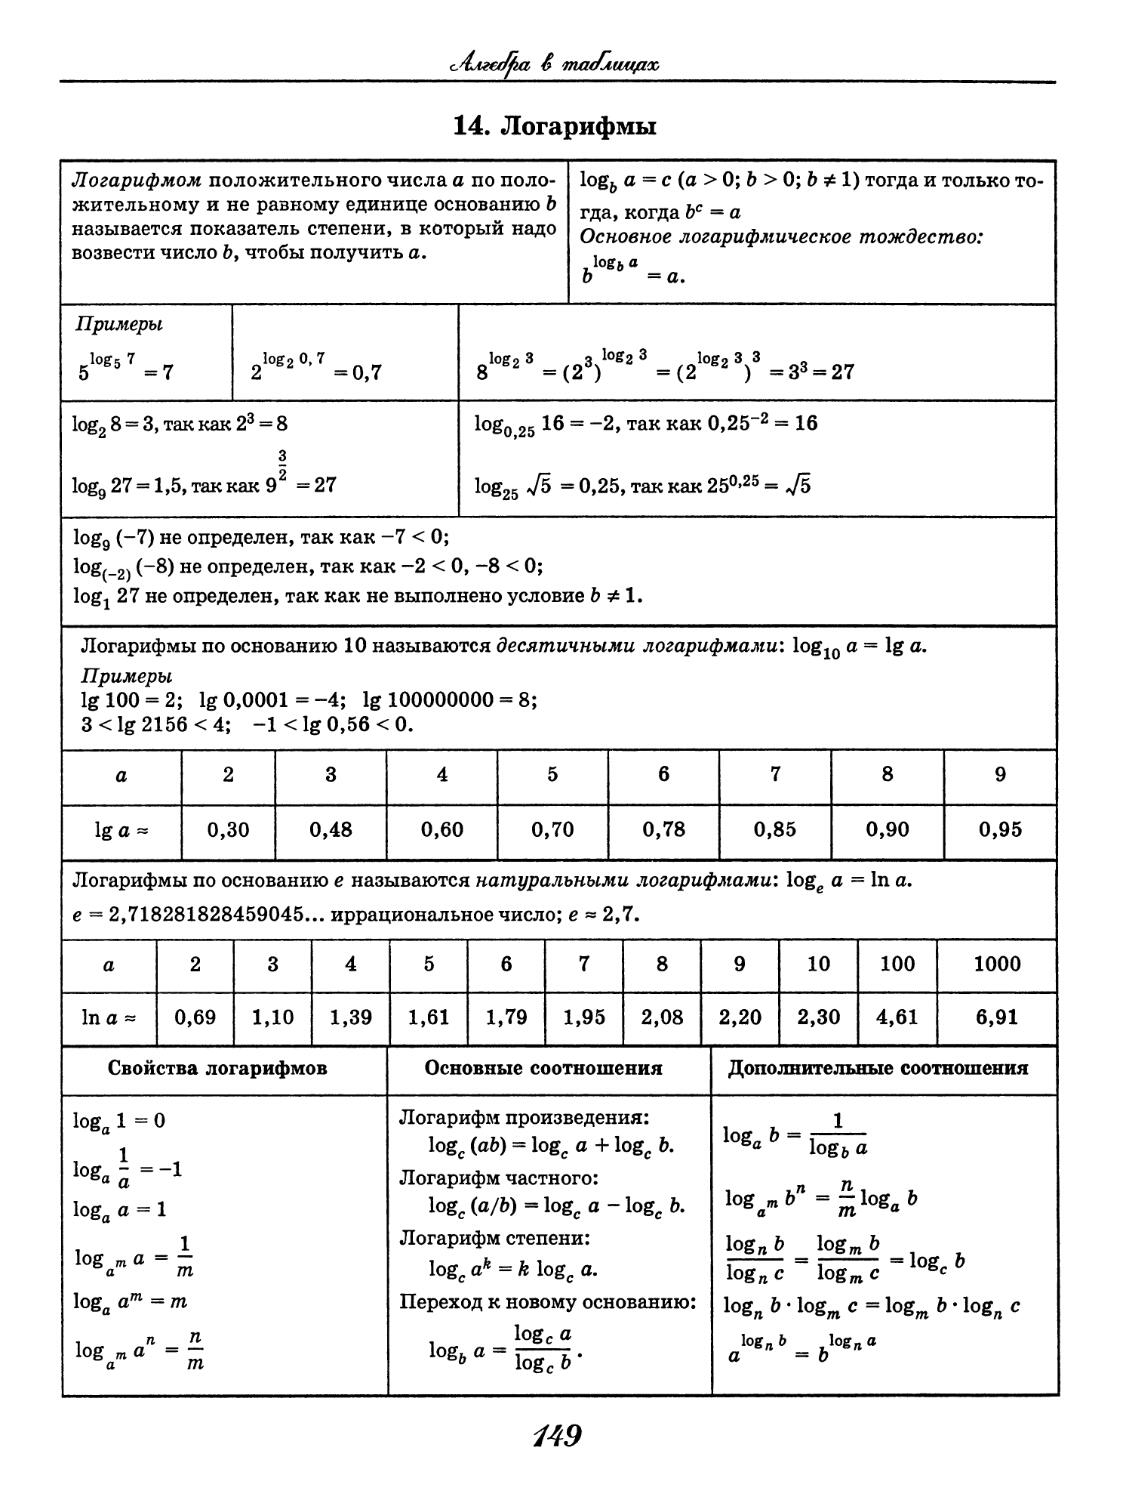 Логарифмы формулы и примеры